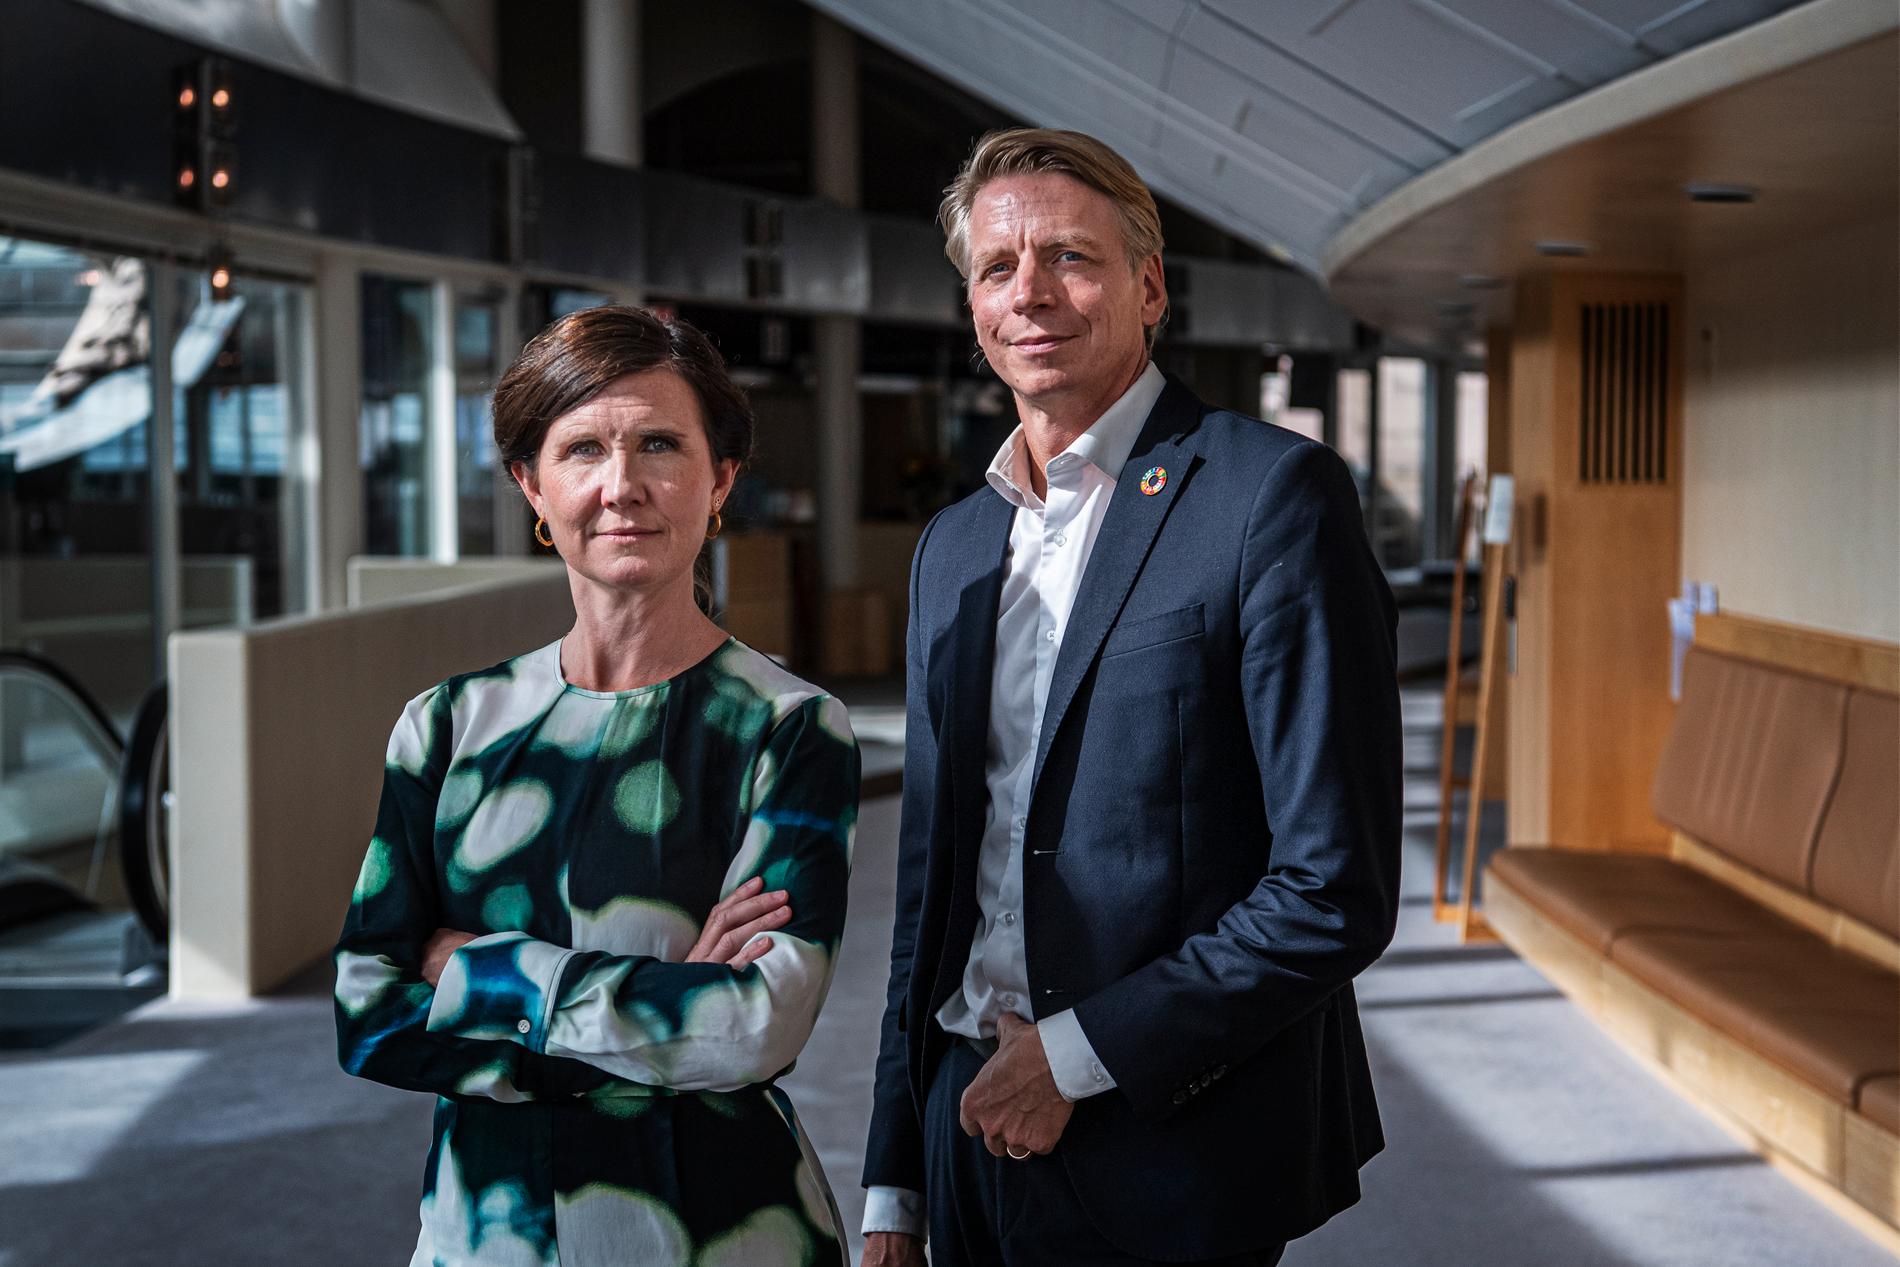 Miljöpartiets språkrör Märta Stenevi och Per Bolund menar att klimatet kommer att bli en stridsfråga. 